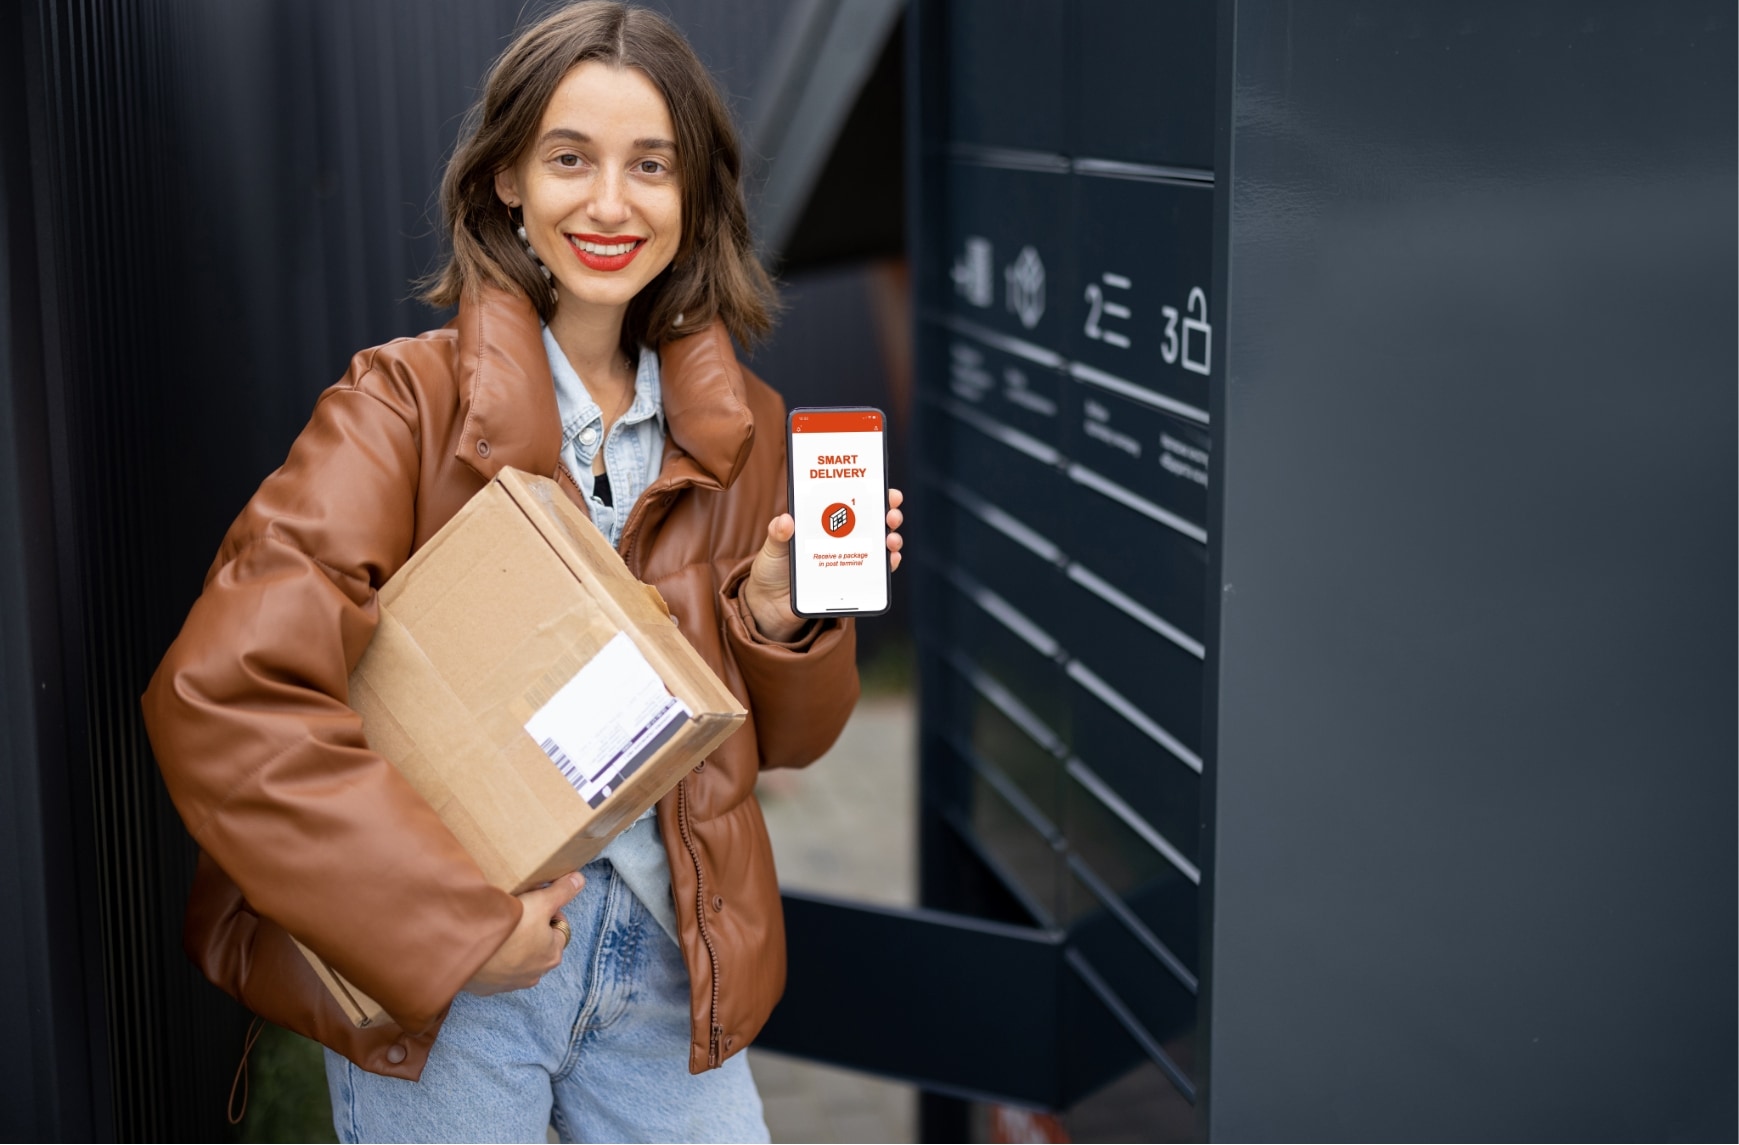 A woman pickups a parcel in a secure locker.